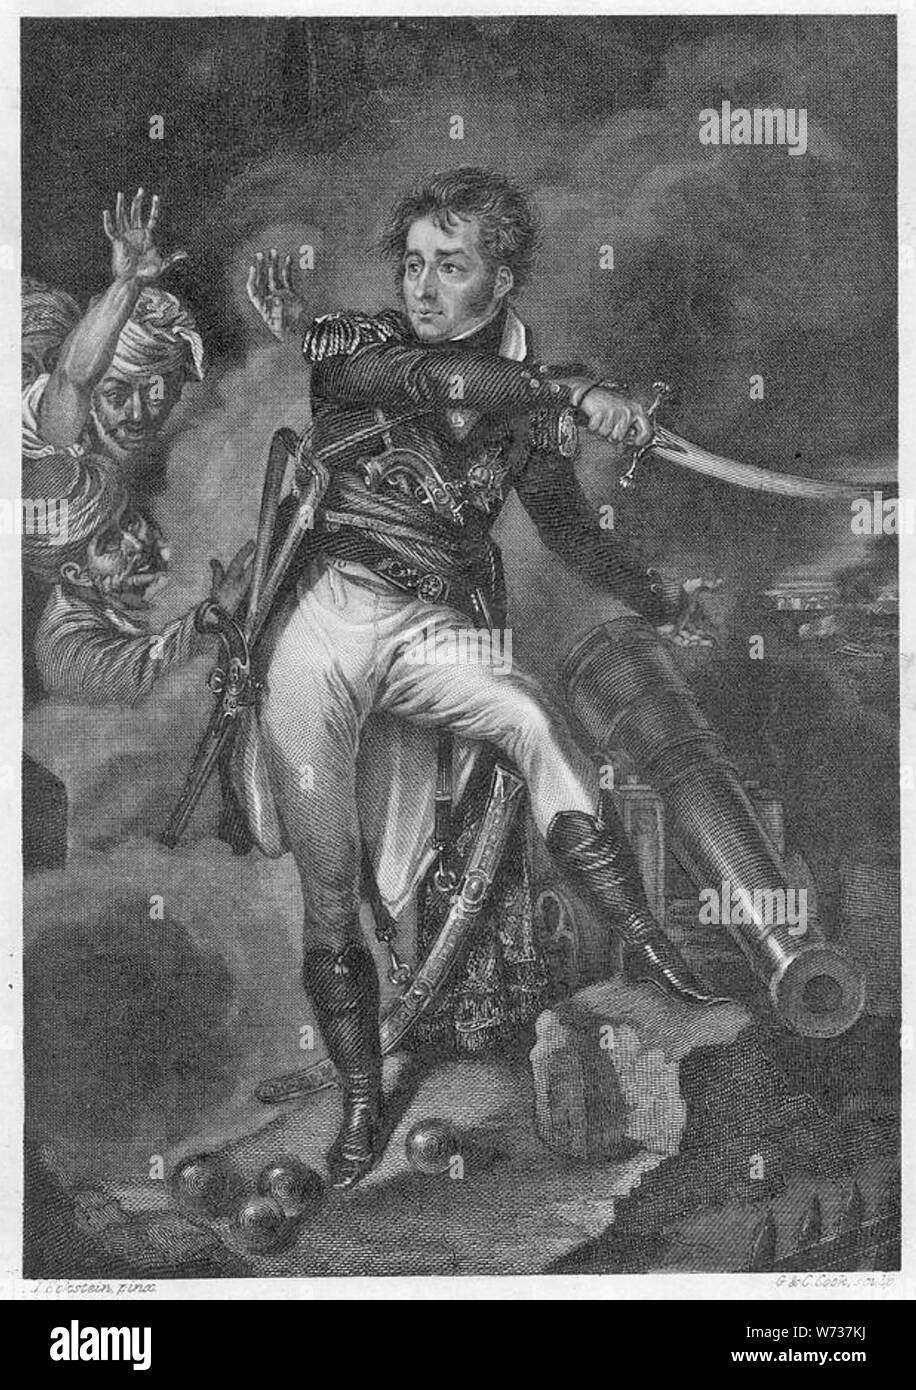 WILLIAM SIDNEY SMITH (1764-1840) officier de marine britannique en tant que siège de Commodore à Acre en 1799 Banque D'Images